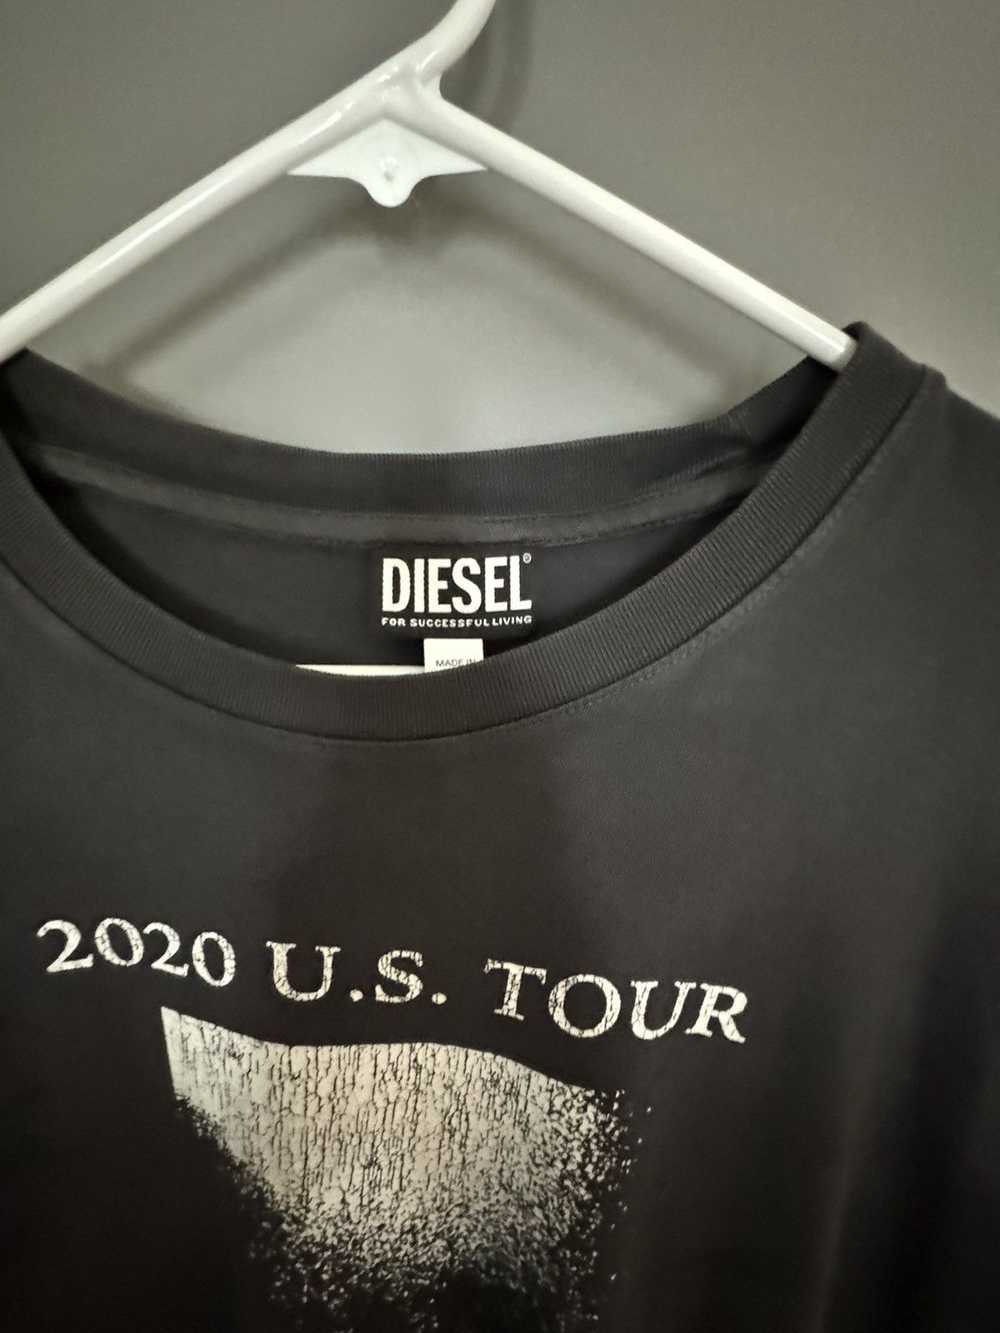 Diesel Diesel T-Shirt used - image 2